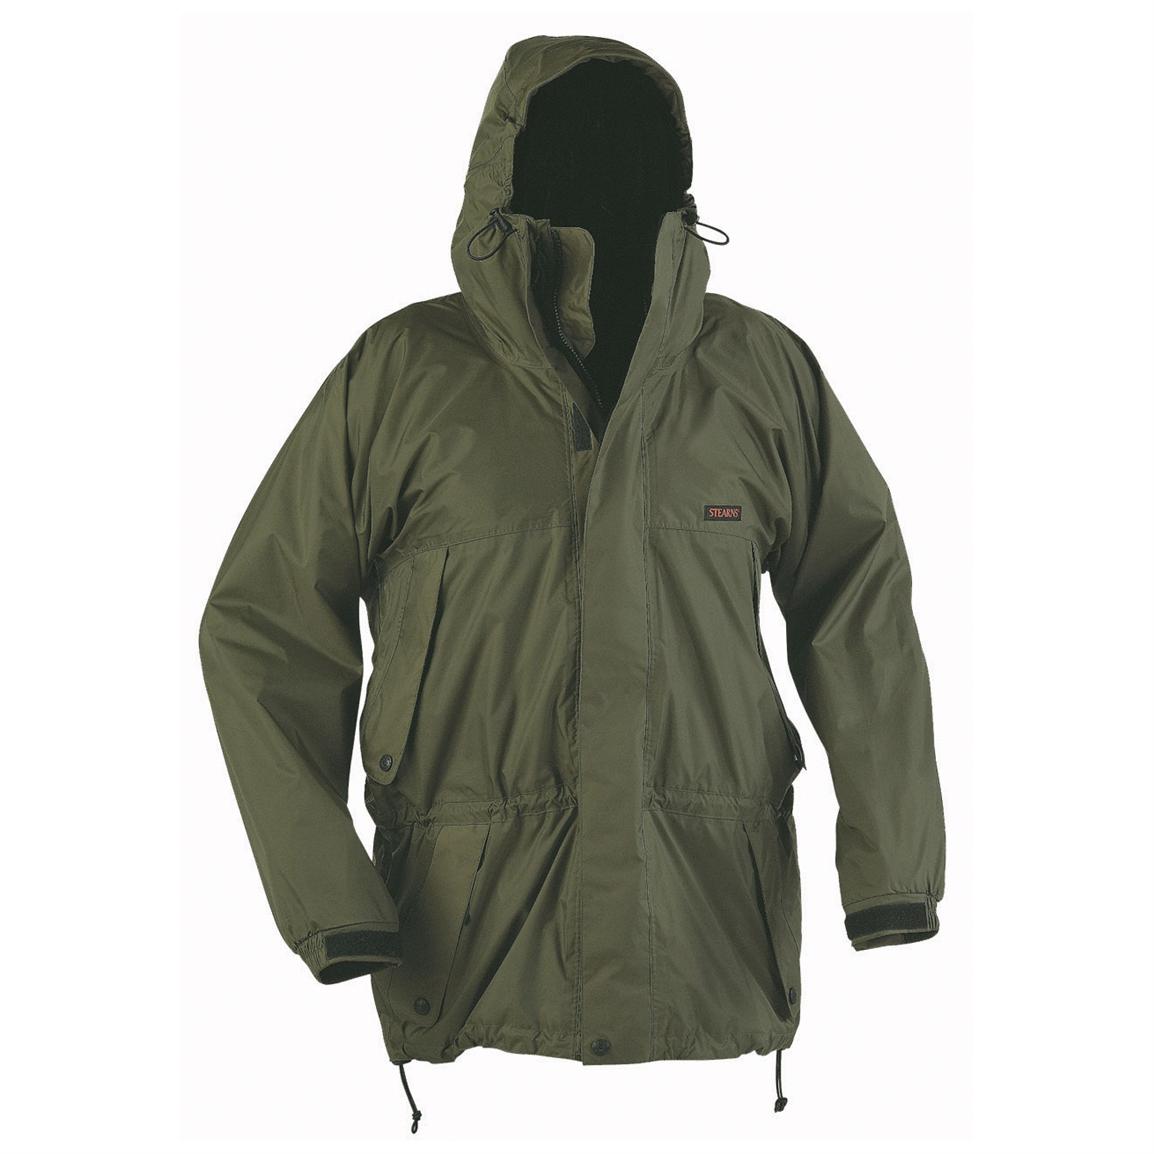 Nylon Rain Jacket, Green - 115983, Rain Jackets & Rain Gear at ...